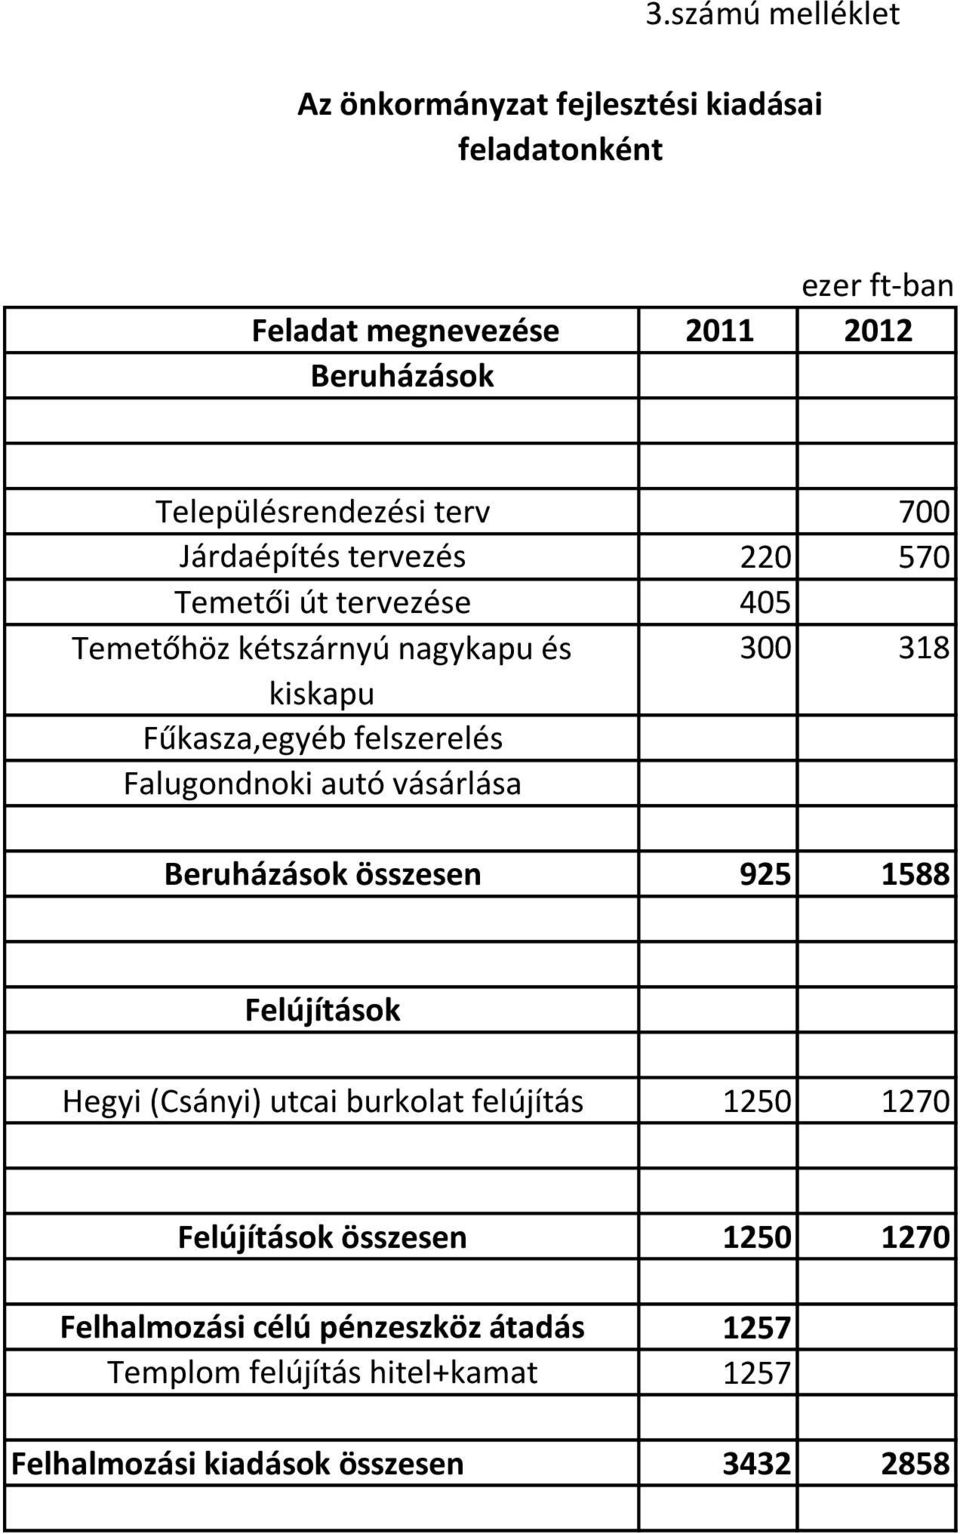 Falugondnoki autó vásárlása Beruházások összesen 700 220 570 405 300 318 925 1588 Felújítások Hegyi (Csányi) utcai burkolat felújítás